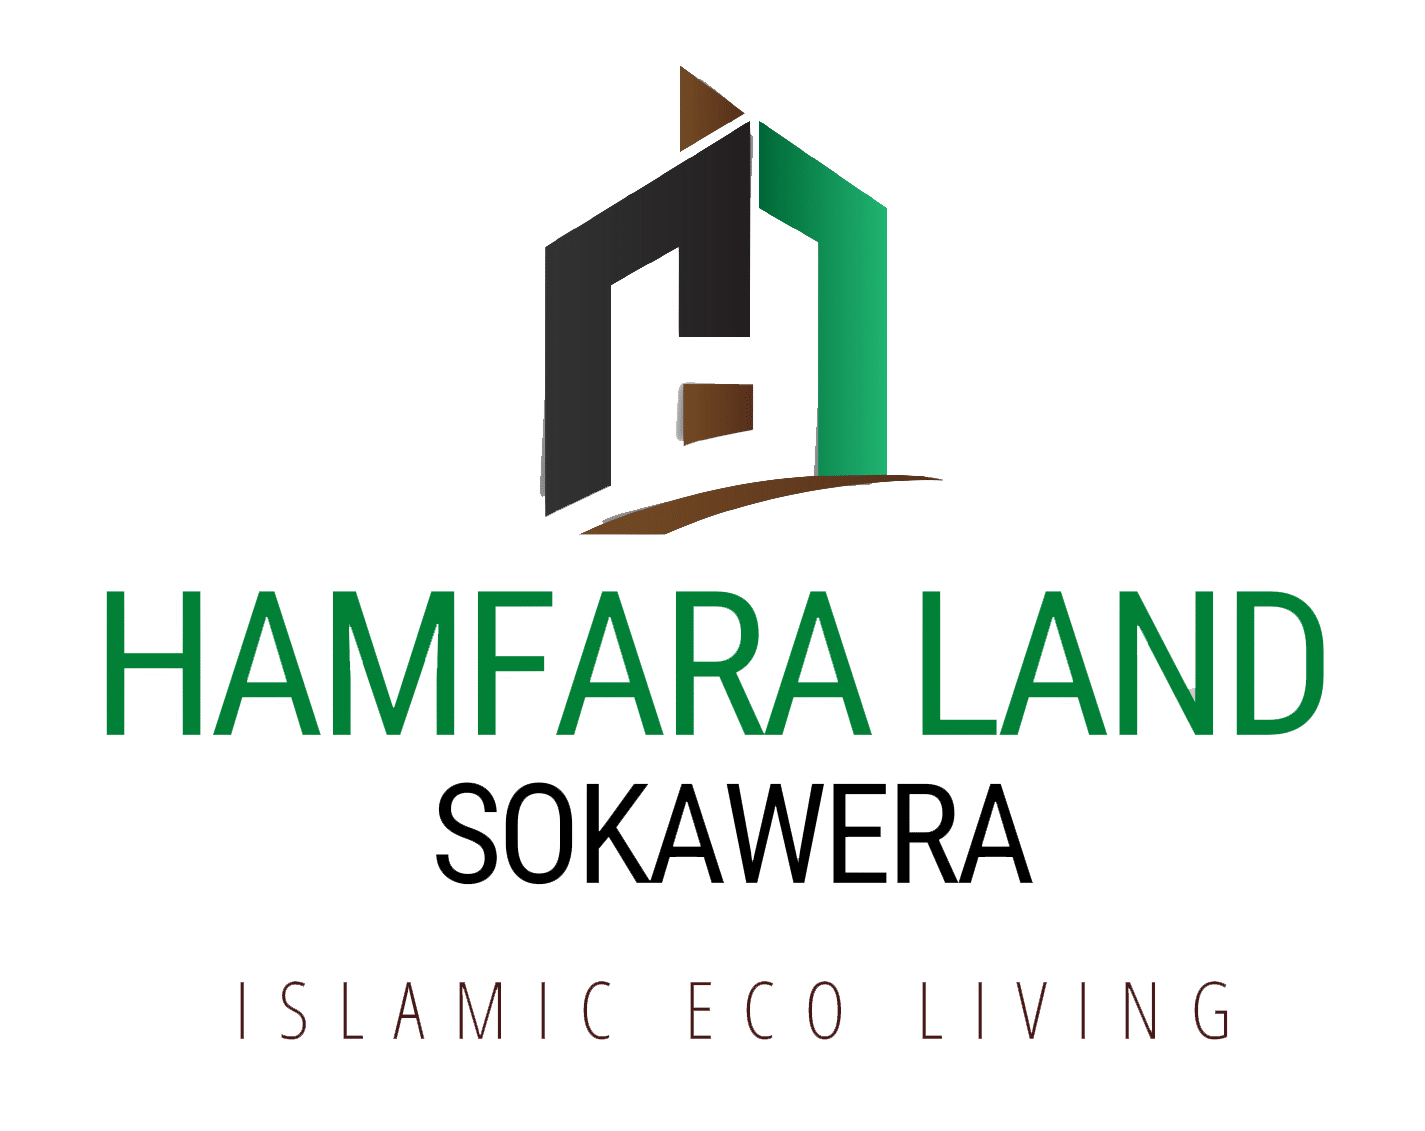 Hamfara Land Sokawera